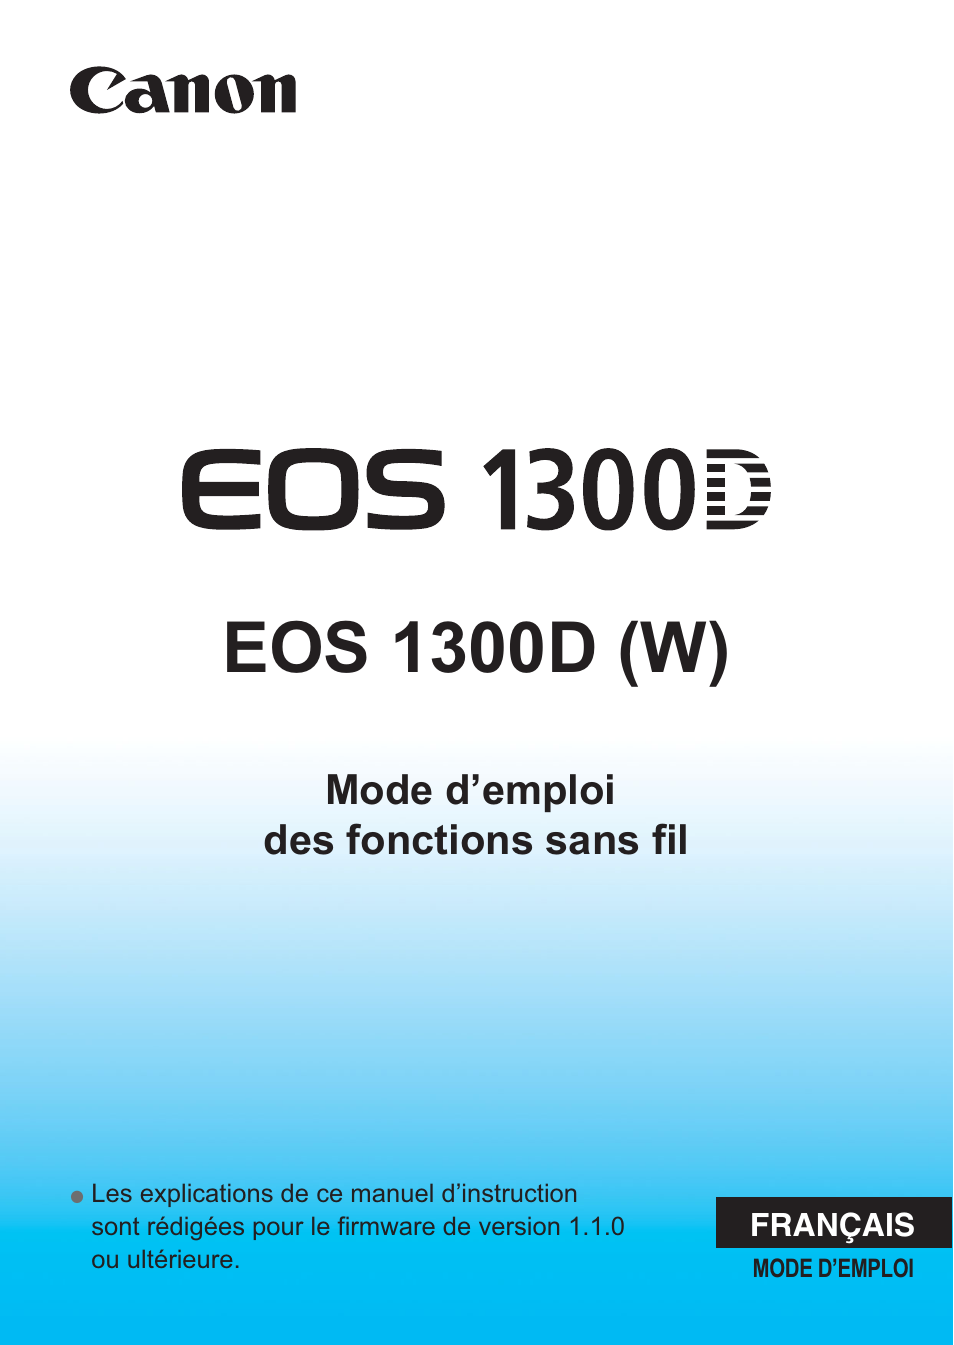 Canon EOS 1300D Manuel d'utilisation | Pages: 144